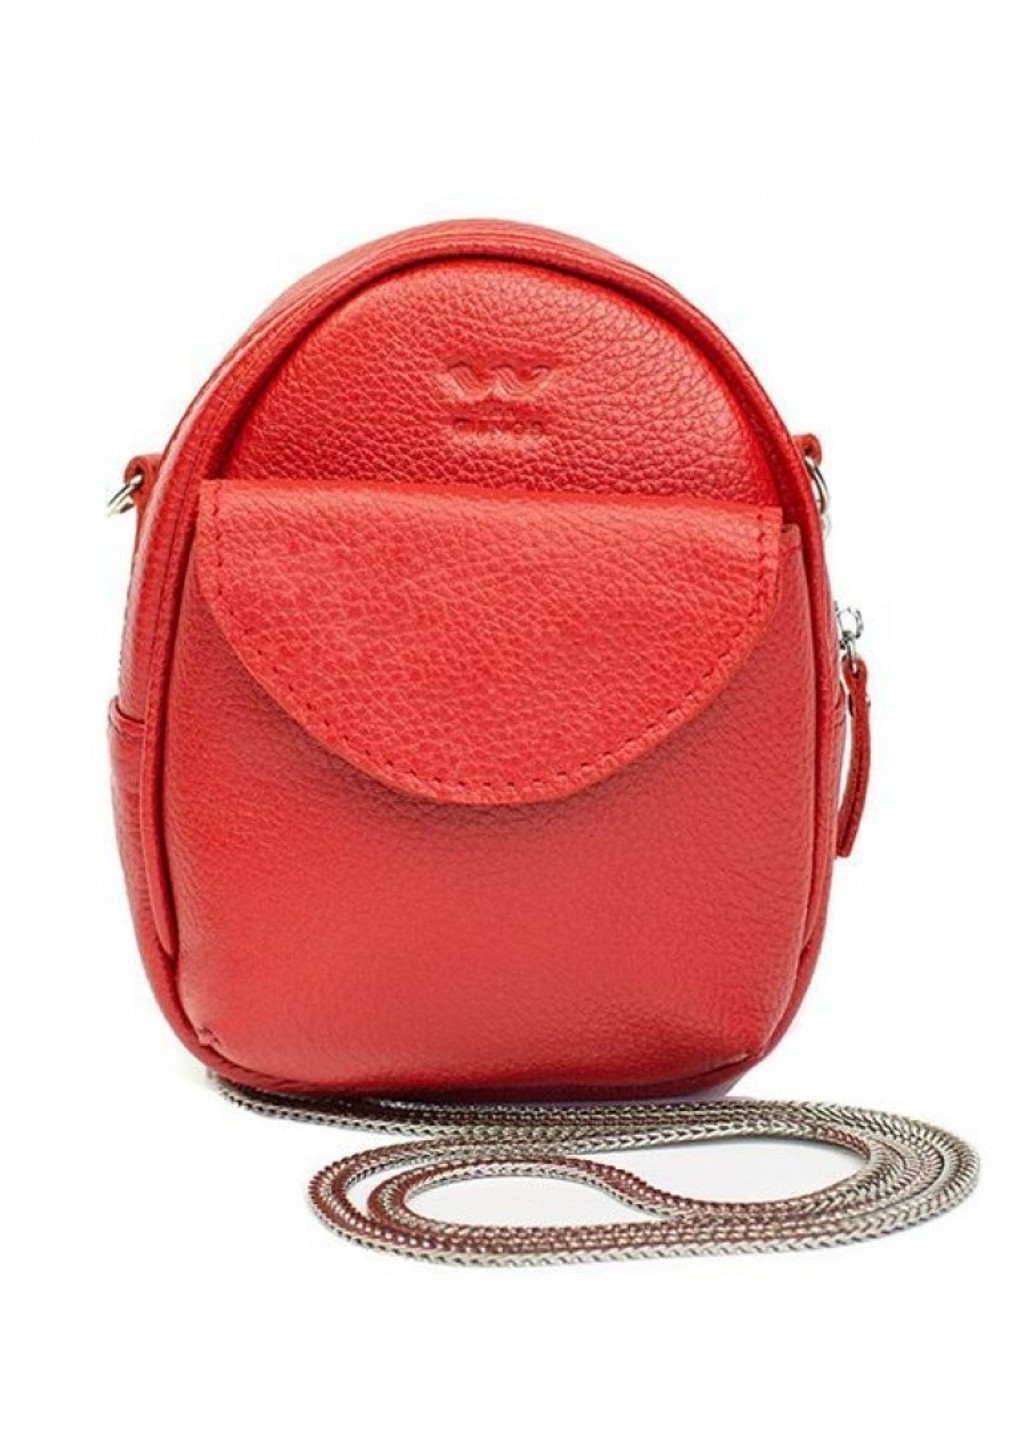 Шкіряна жіноча сумка міні Kroha червона флотар TW-KROHA-RED-FLO The Wings (266142876)